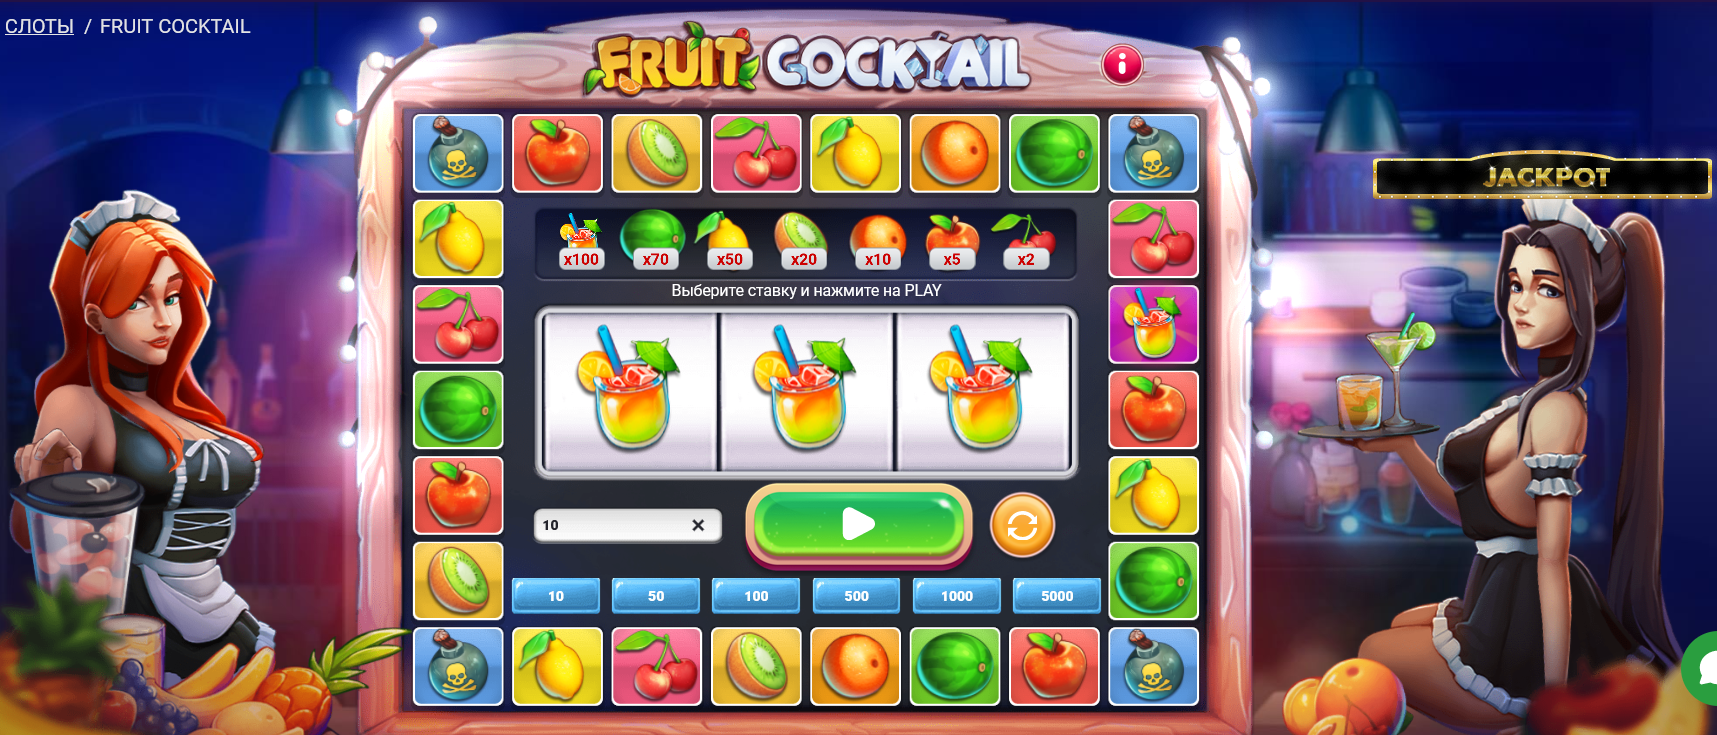 Fruit coctail от 1xGames